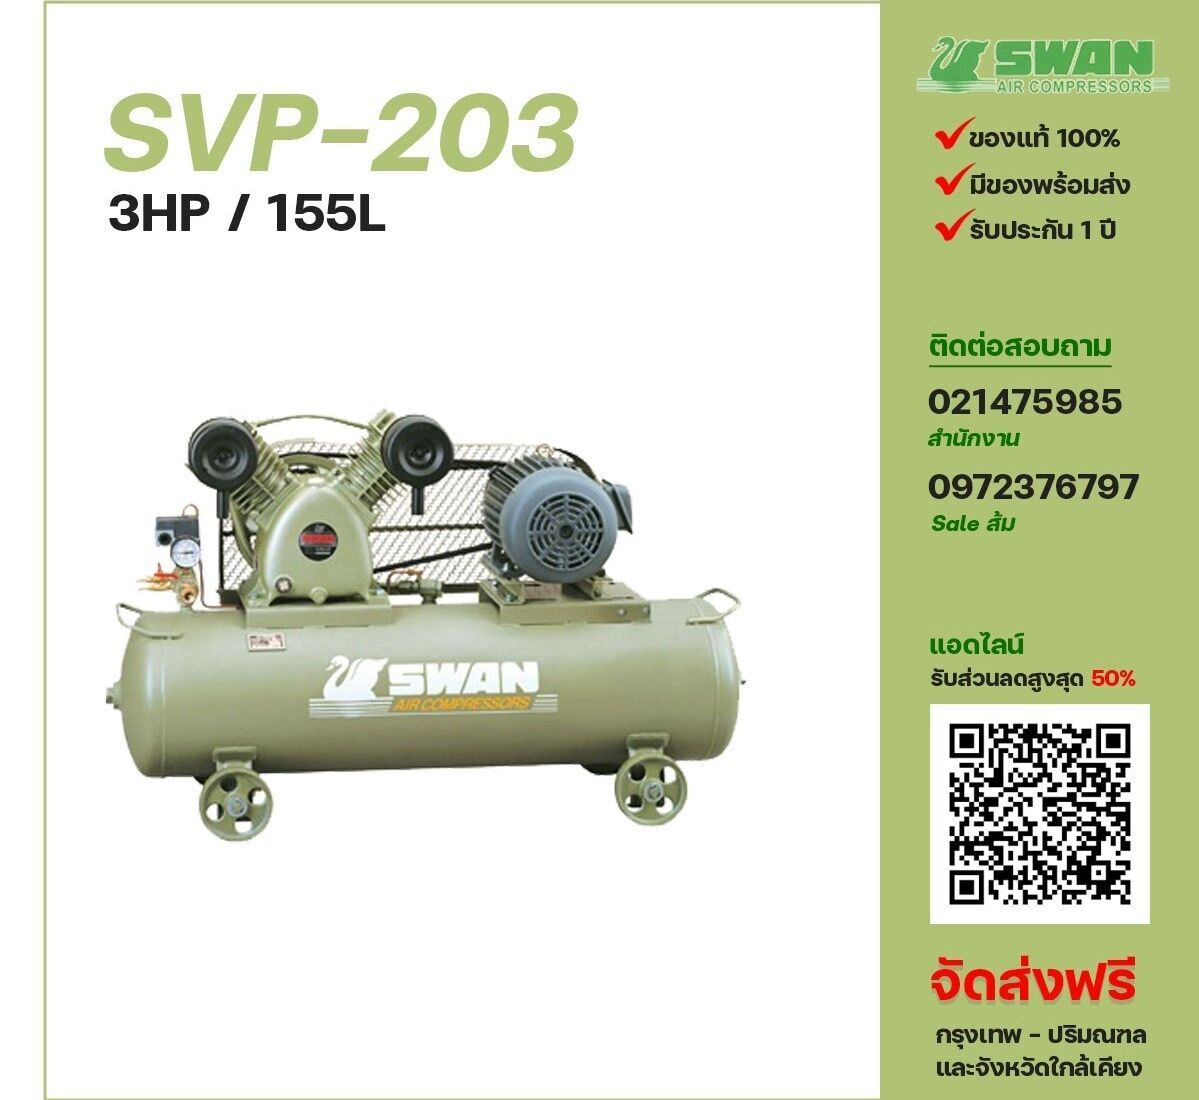 ปั๊มลมสวอน SWAN SVP-203 220V/380V ปั๊มลมลูกสูบ ขนาด 2 สูบ 3 แรงม้า 155 ลิตร SWAN พร้อมมอเตอร์ ไฟ 220V/380V ส่งฟรี กรุงเทพฯ-ปริมณฑล รับประกัน 1 ปี